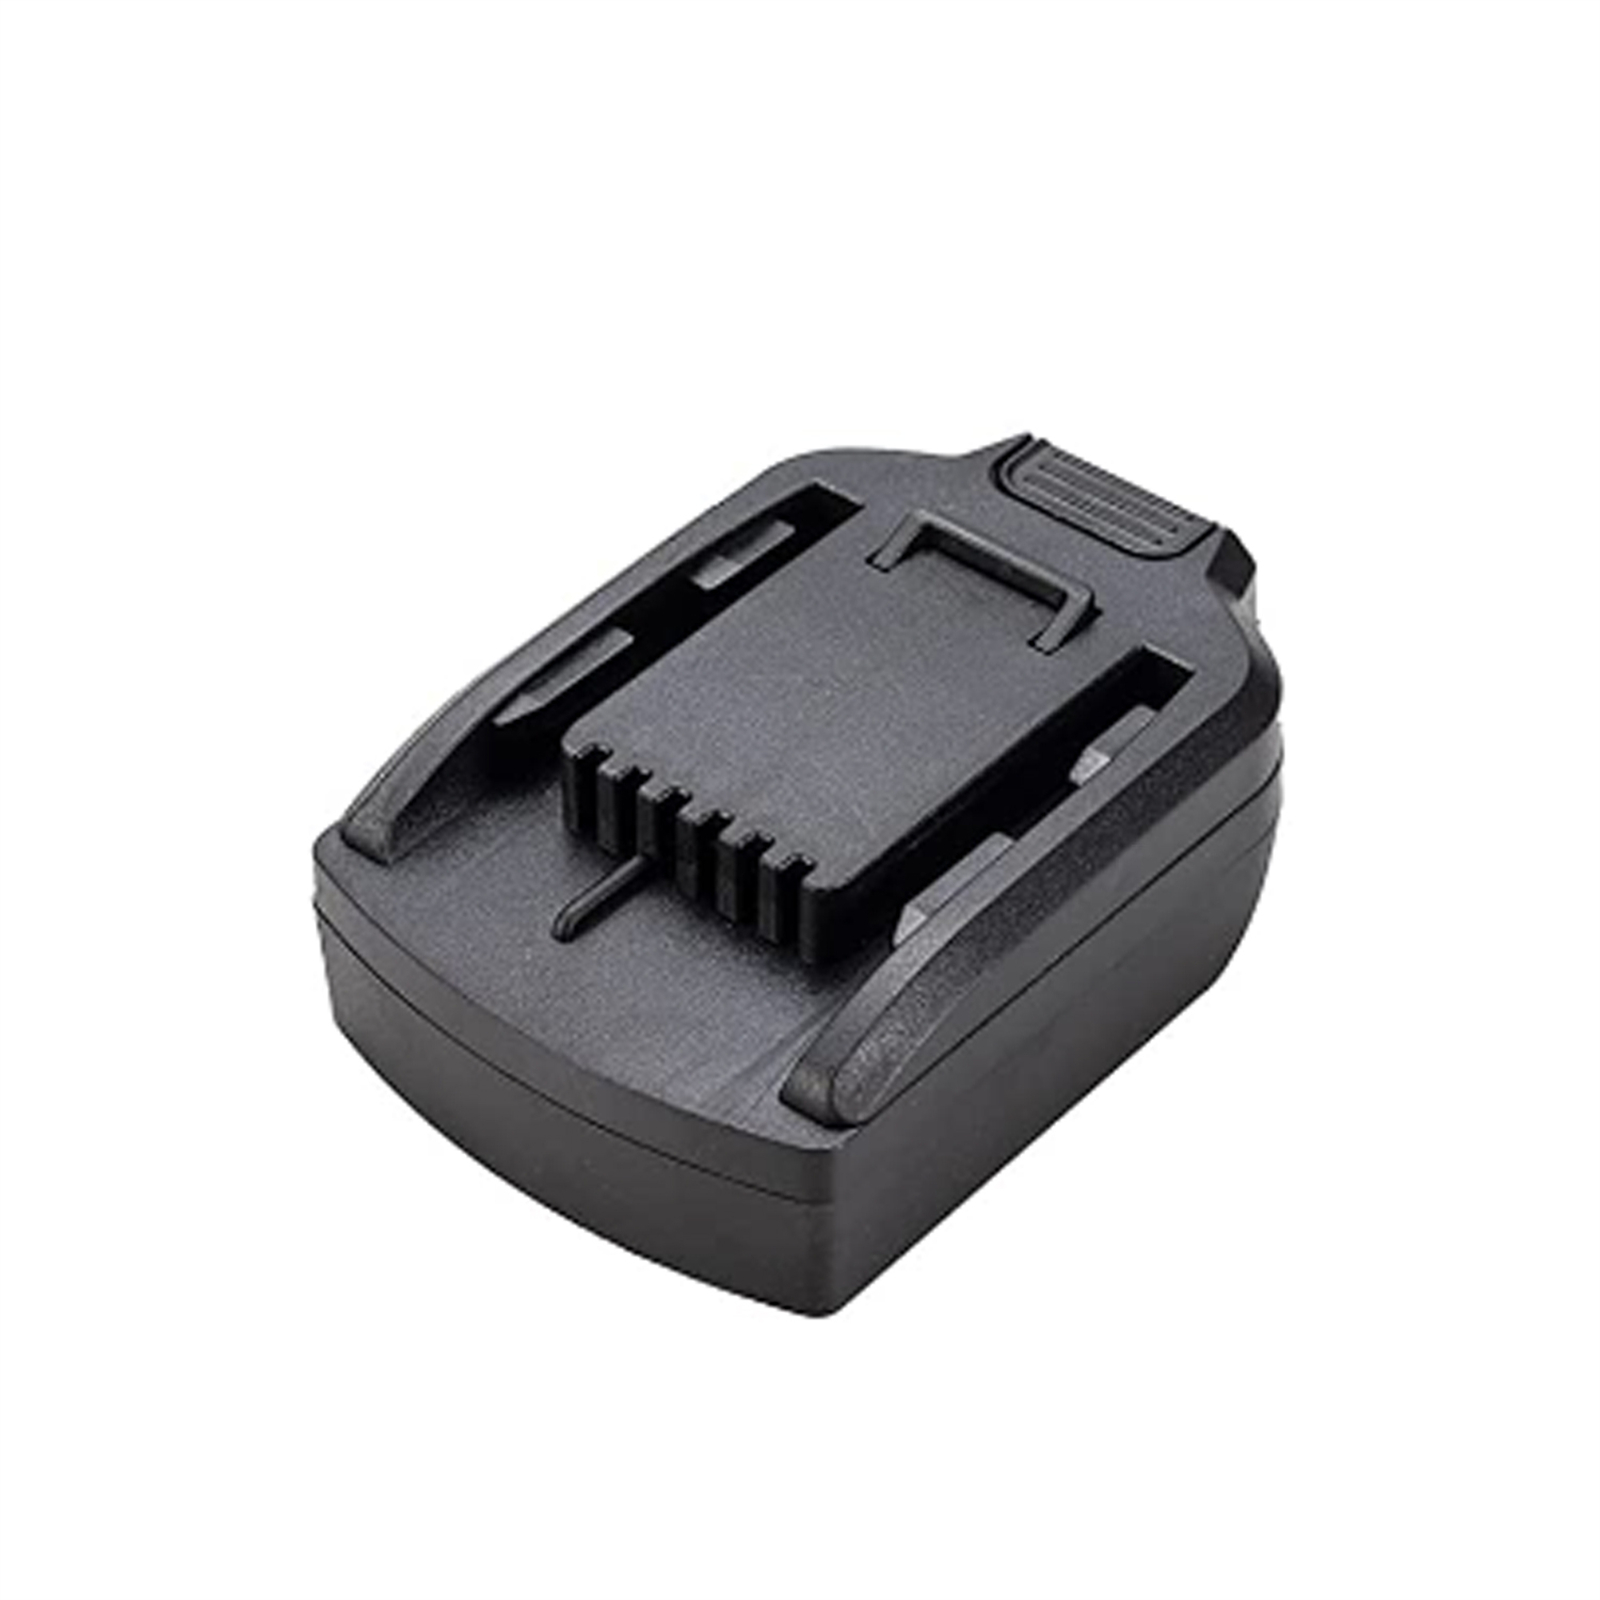 Battery Adapter for Dewalt 20v Dcb Series to Worx 20v Converter